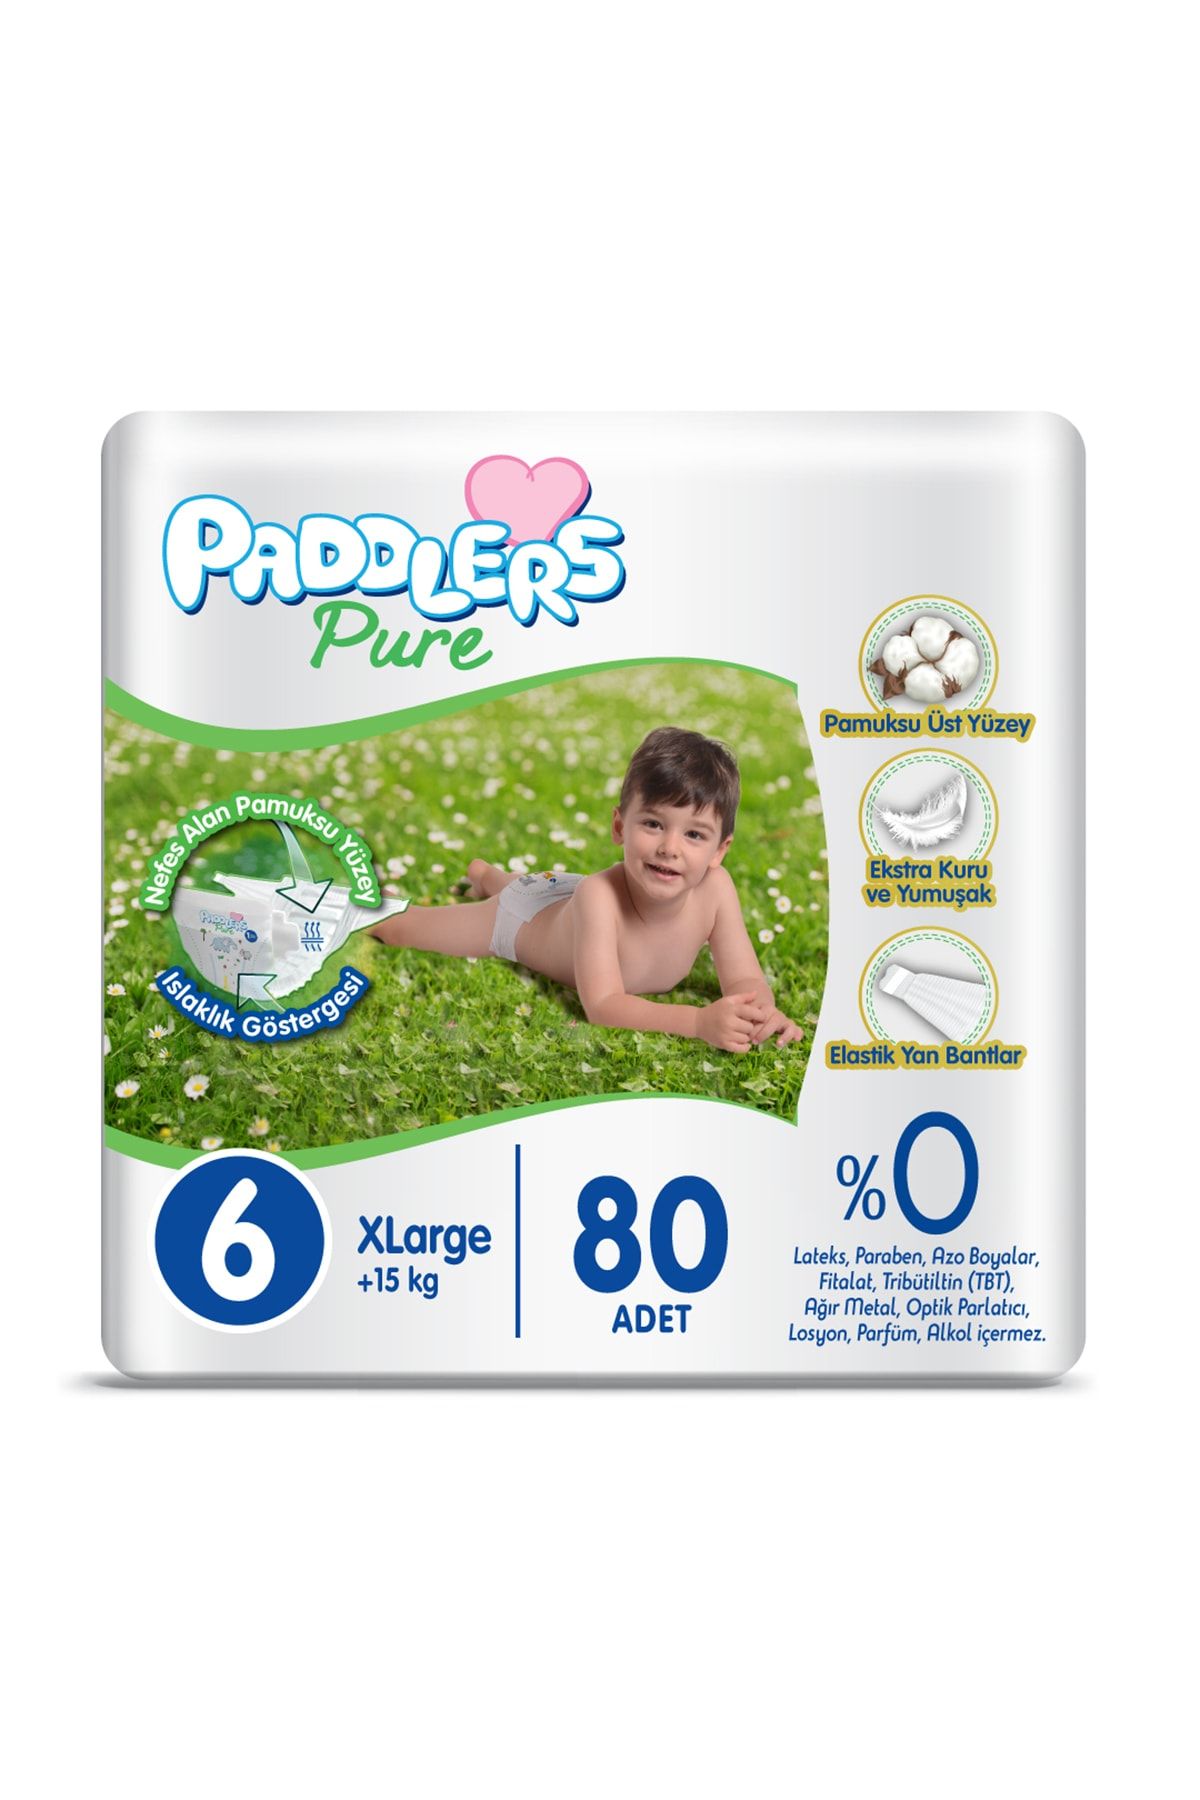 Paddlers Pure Bebek Bezi 6 Numara X-large 80 Adet (15 KG) Süper Fırsat Paketi